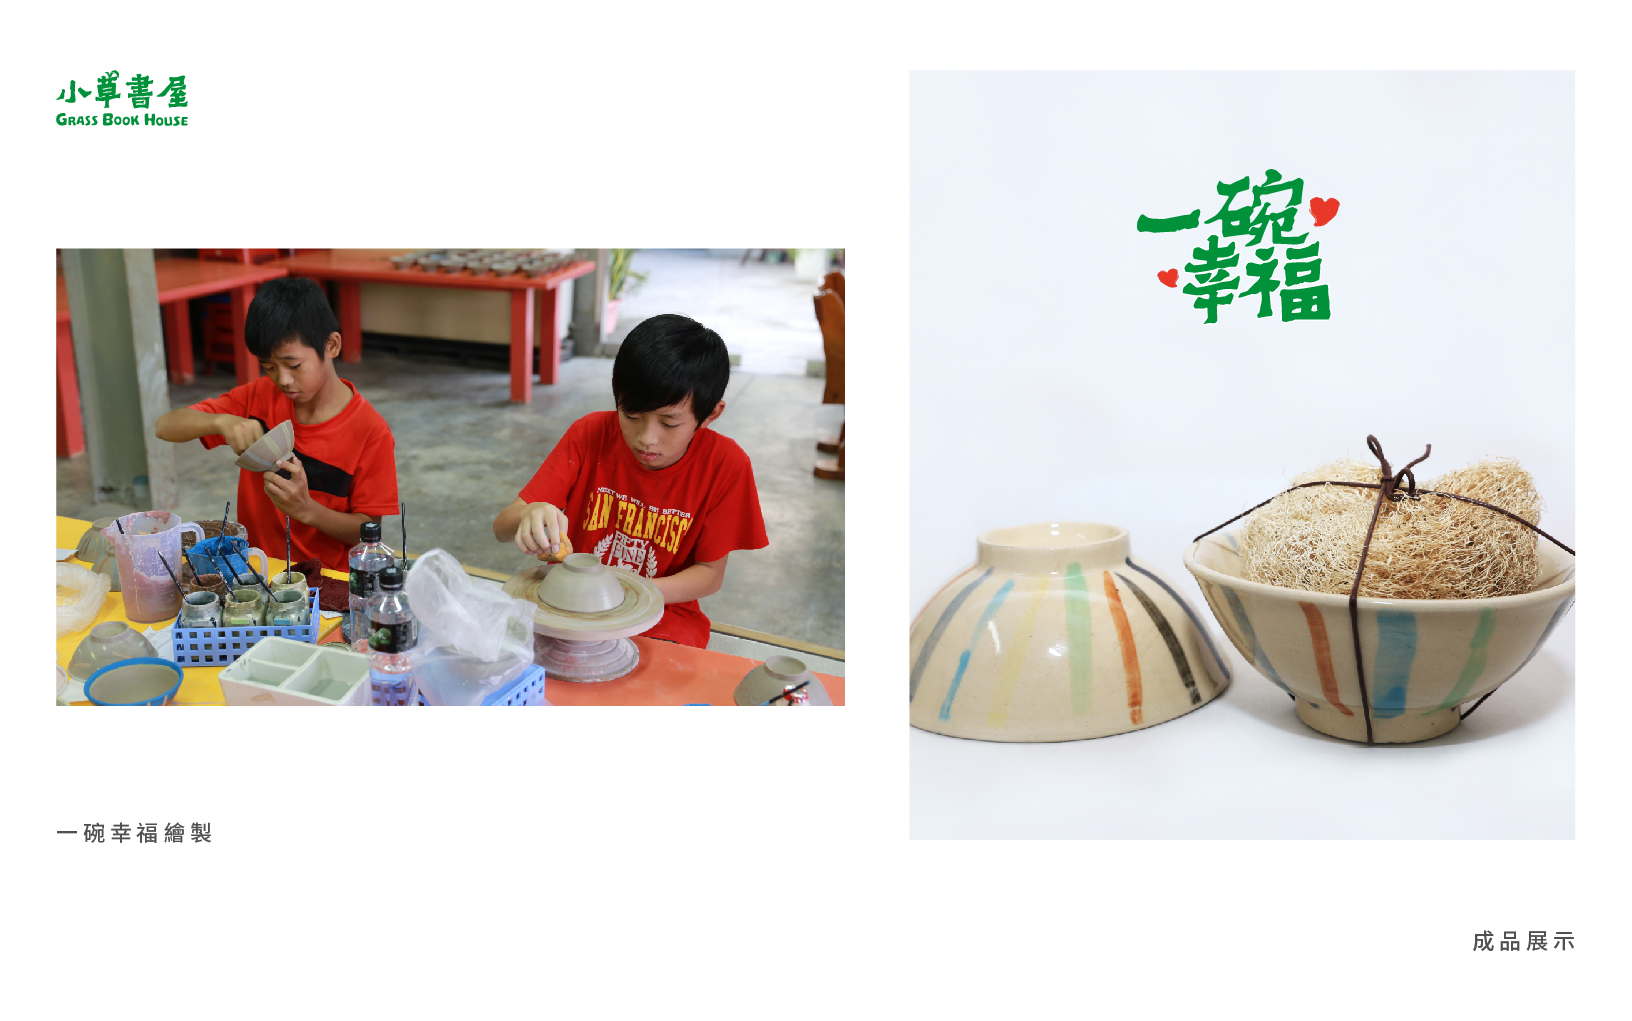 小草書屋在興建過程時，更是與位於鶯歌的新旺集瓷合作「一碗幸福」計畫，讓孩子自己繪製陶碗並販售，用於籌建計劃之中。 | 小草書屋 | 沒有退場機制的陪伴